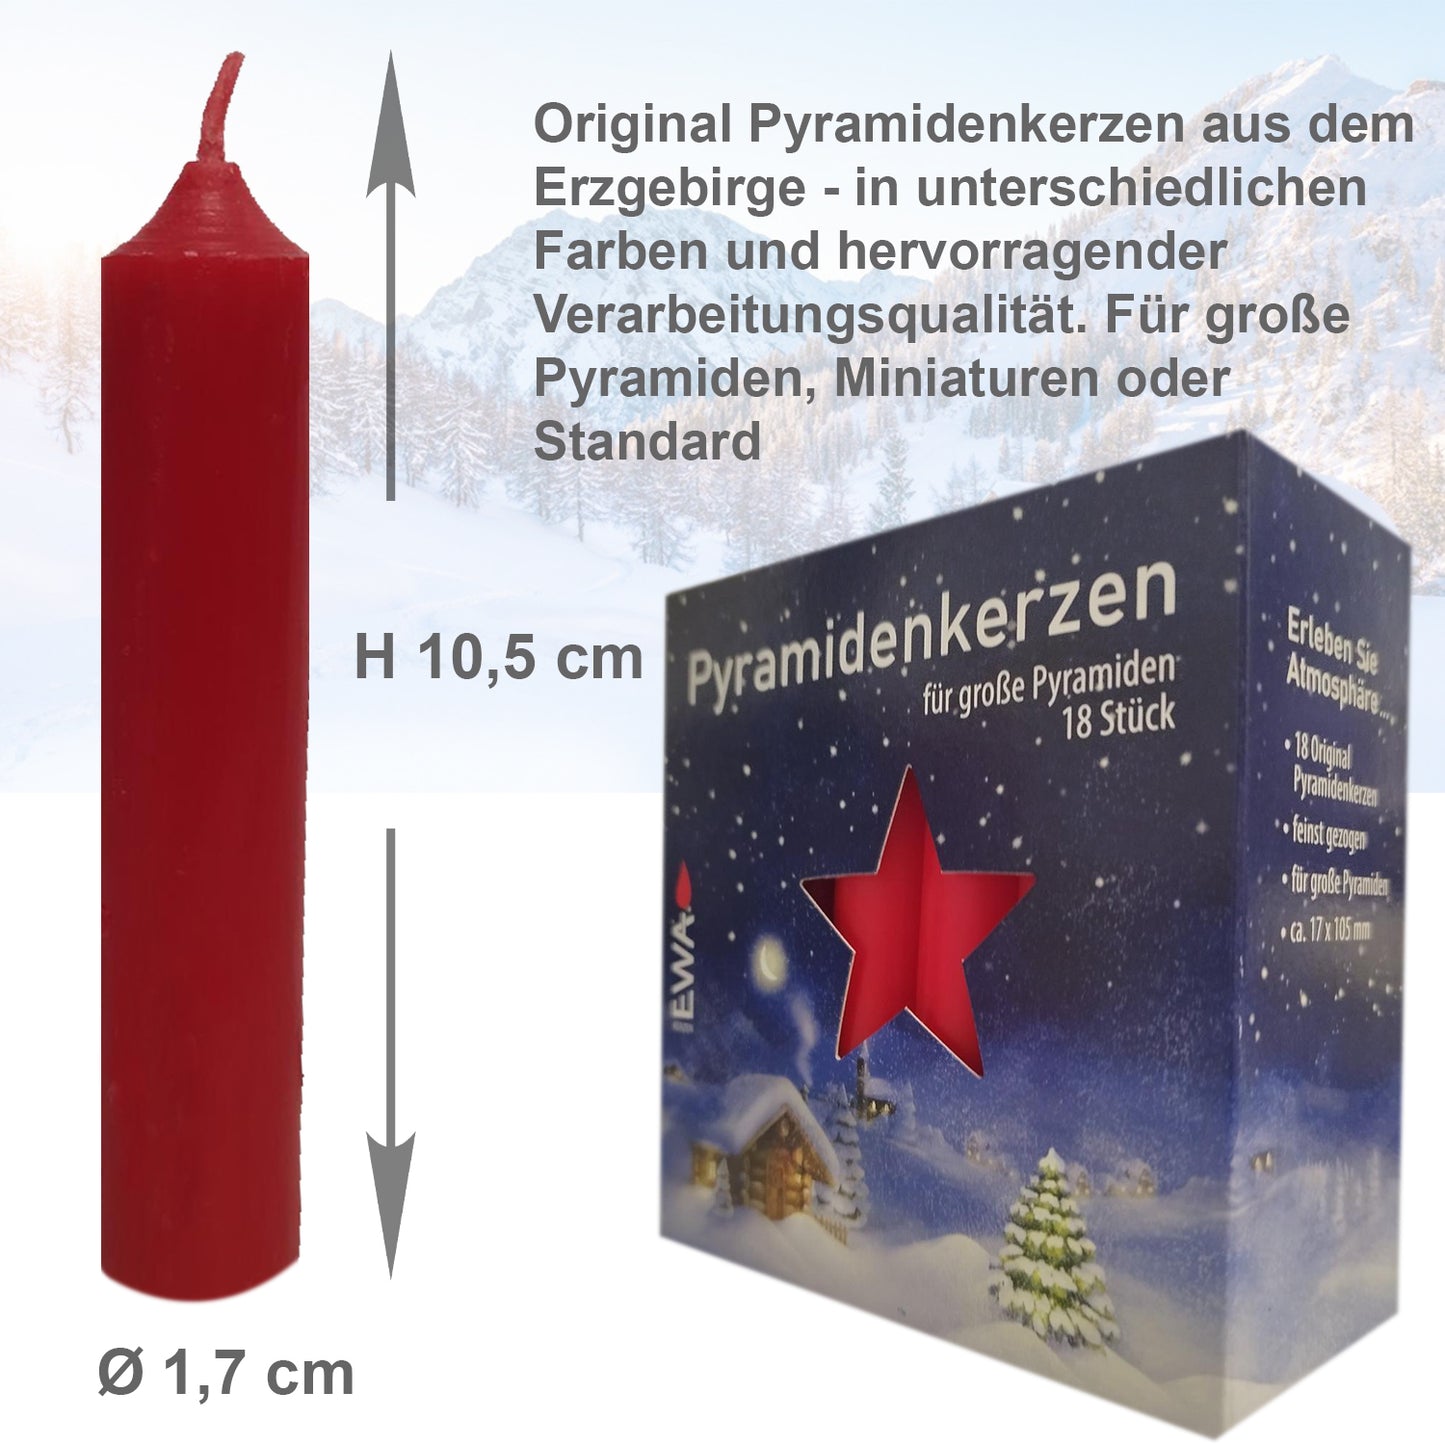 288er Set Erzgebirge (16x18 Stk) Pyramidenkerzen, Ø 1,72 x H 10,5 cm, rot